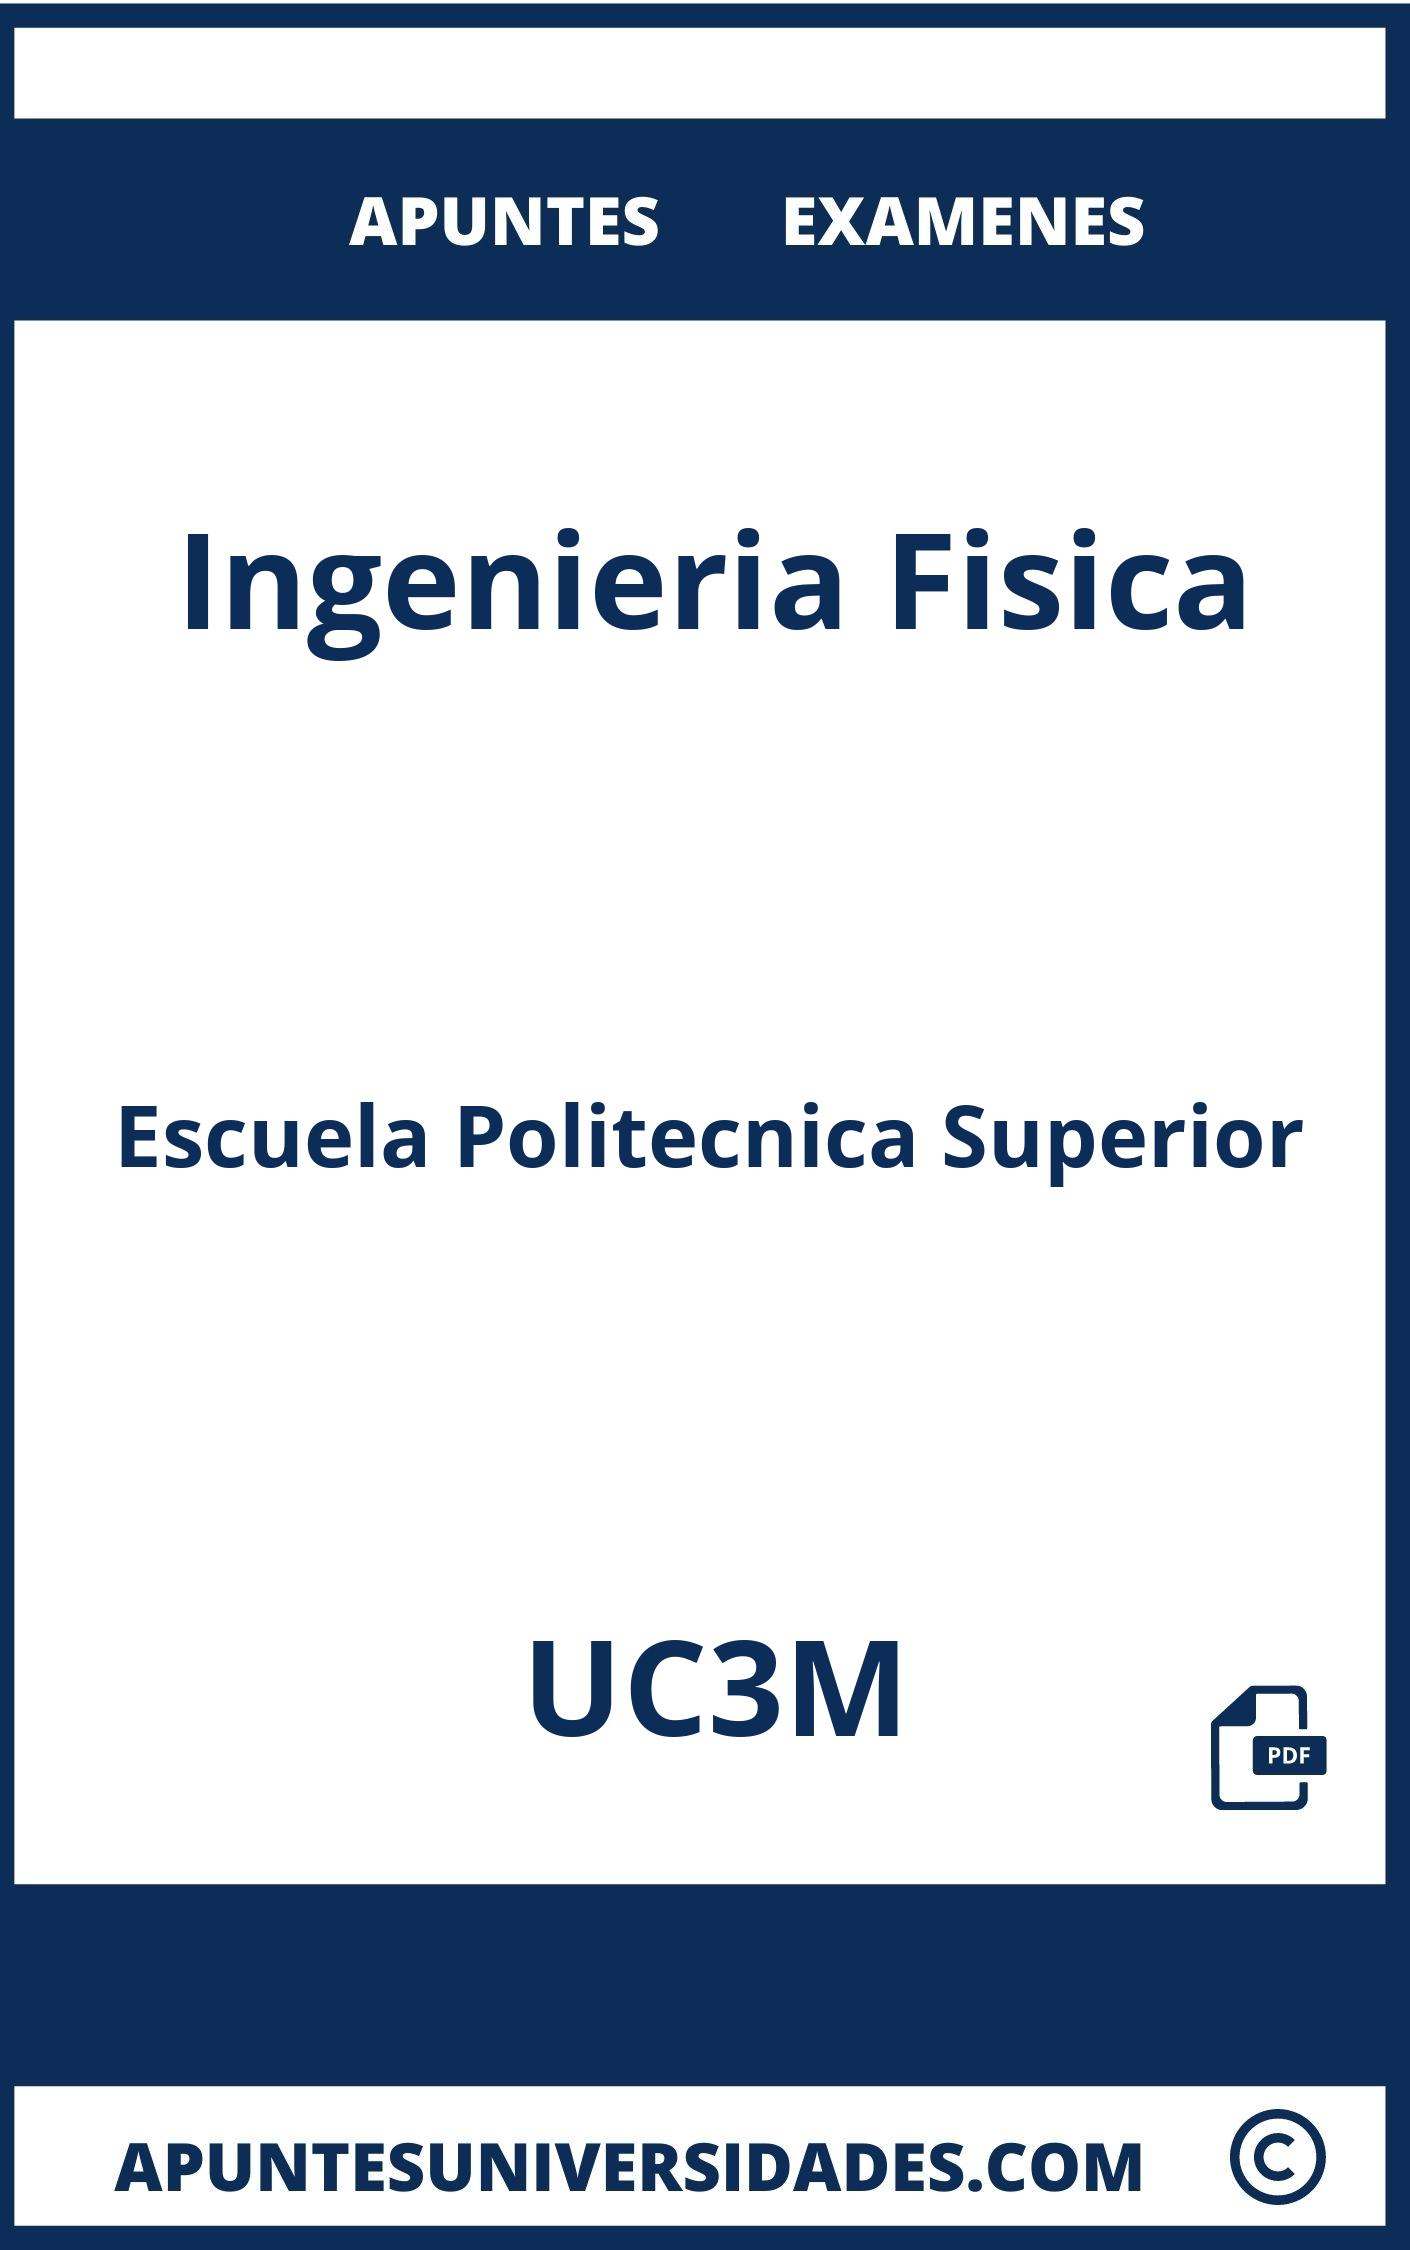 Apuntes y Examenes Ingenieria Fisica UC3M